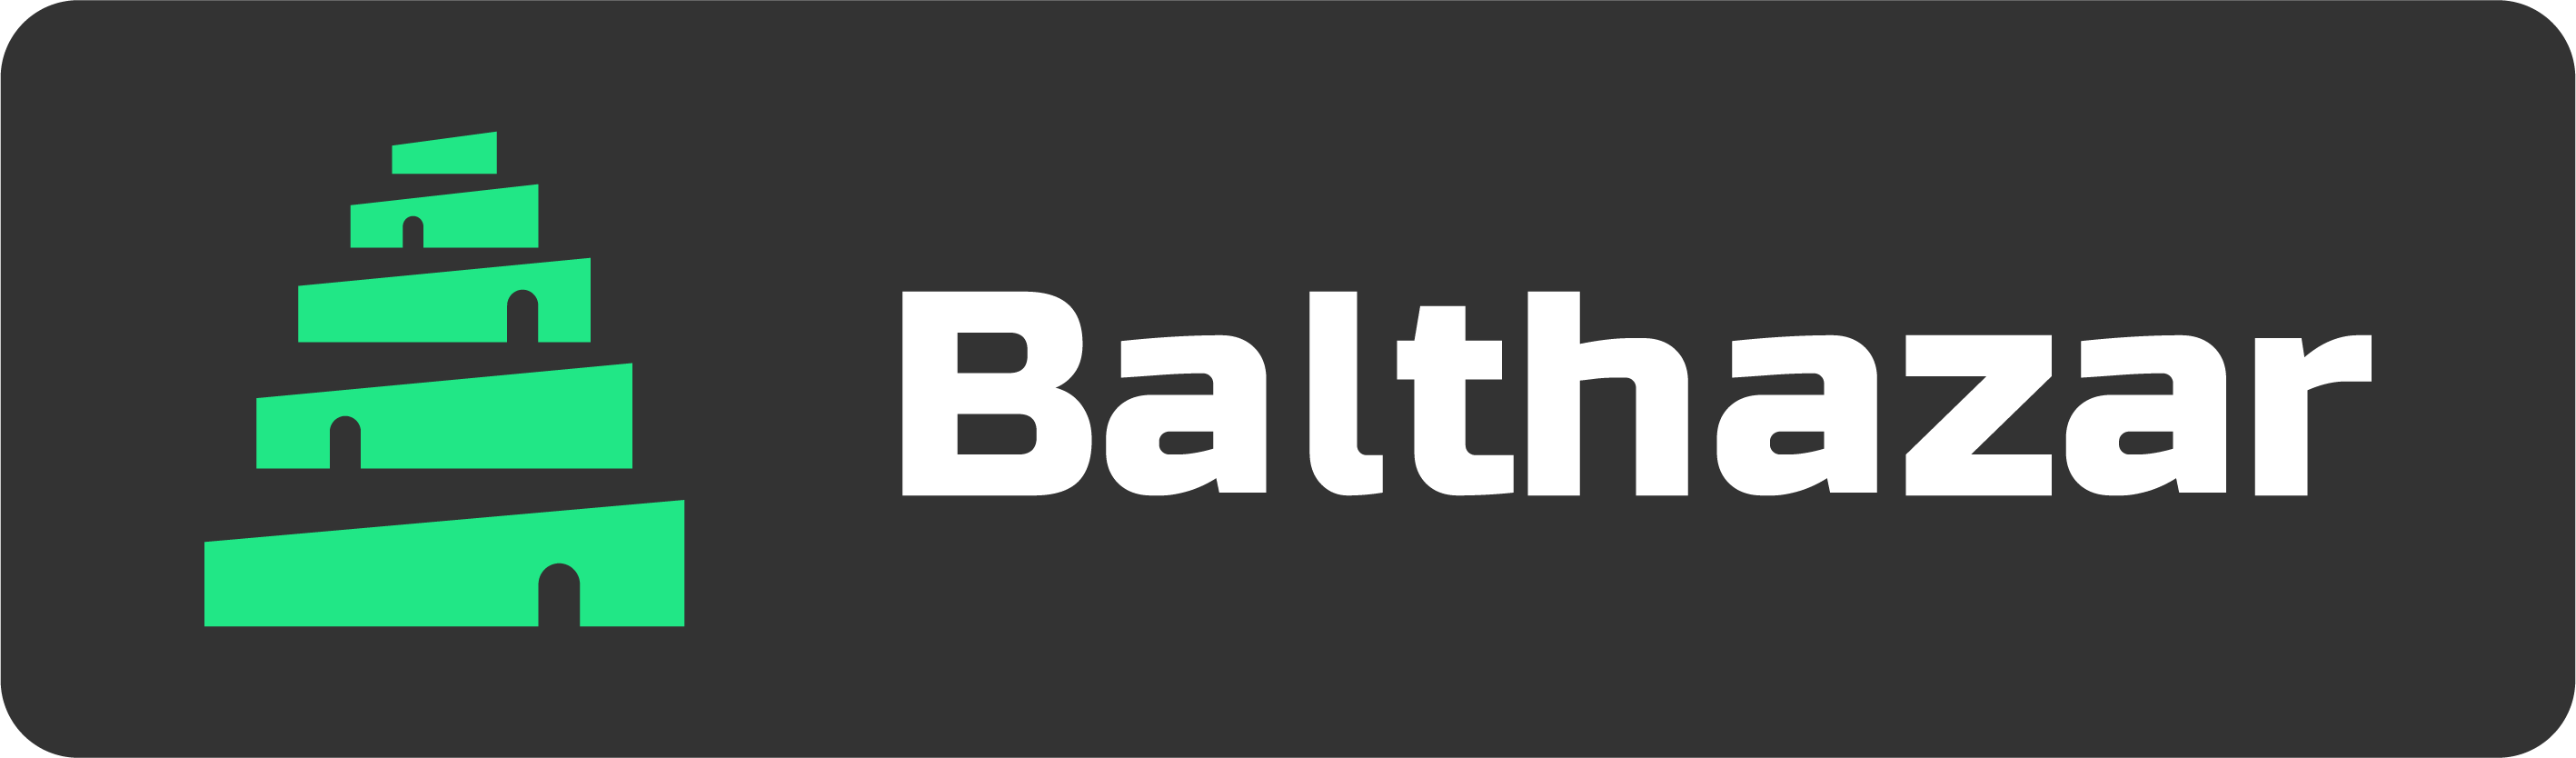 Balthazar Announces Partnership with Block Born